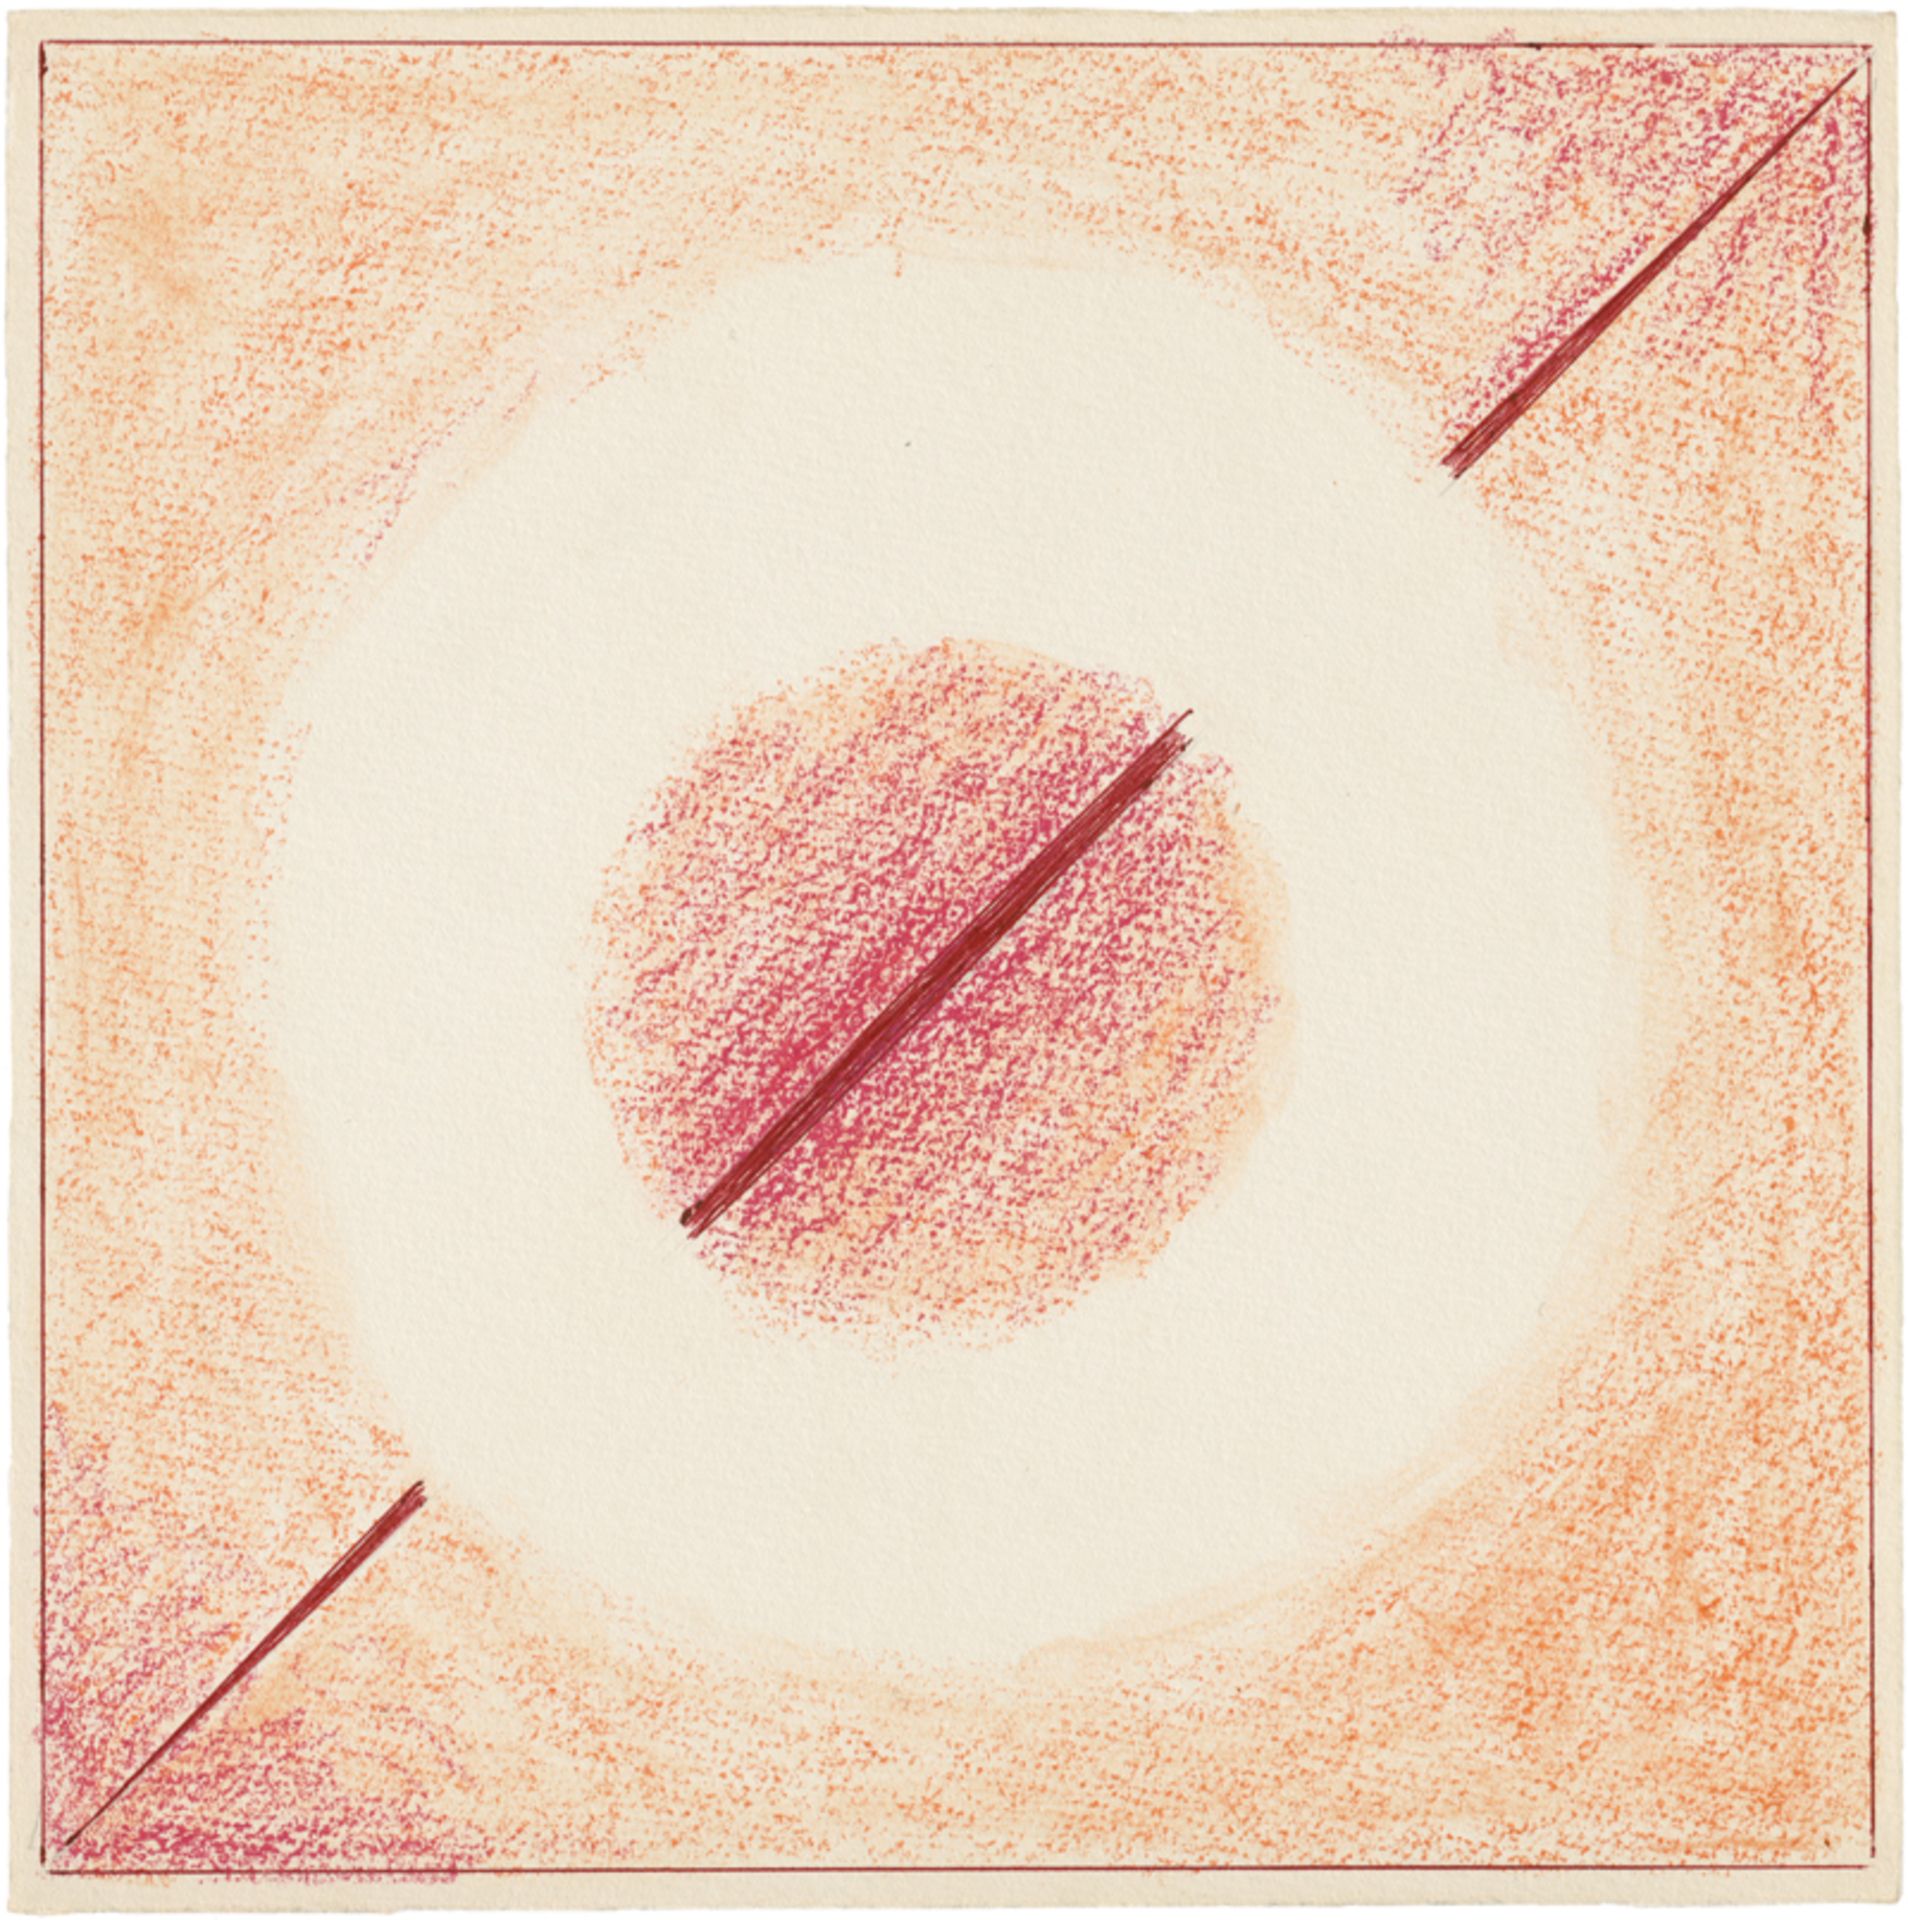 Buchholz, Erich: Geometrische Kompositionen - Image 2 of 2